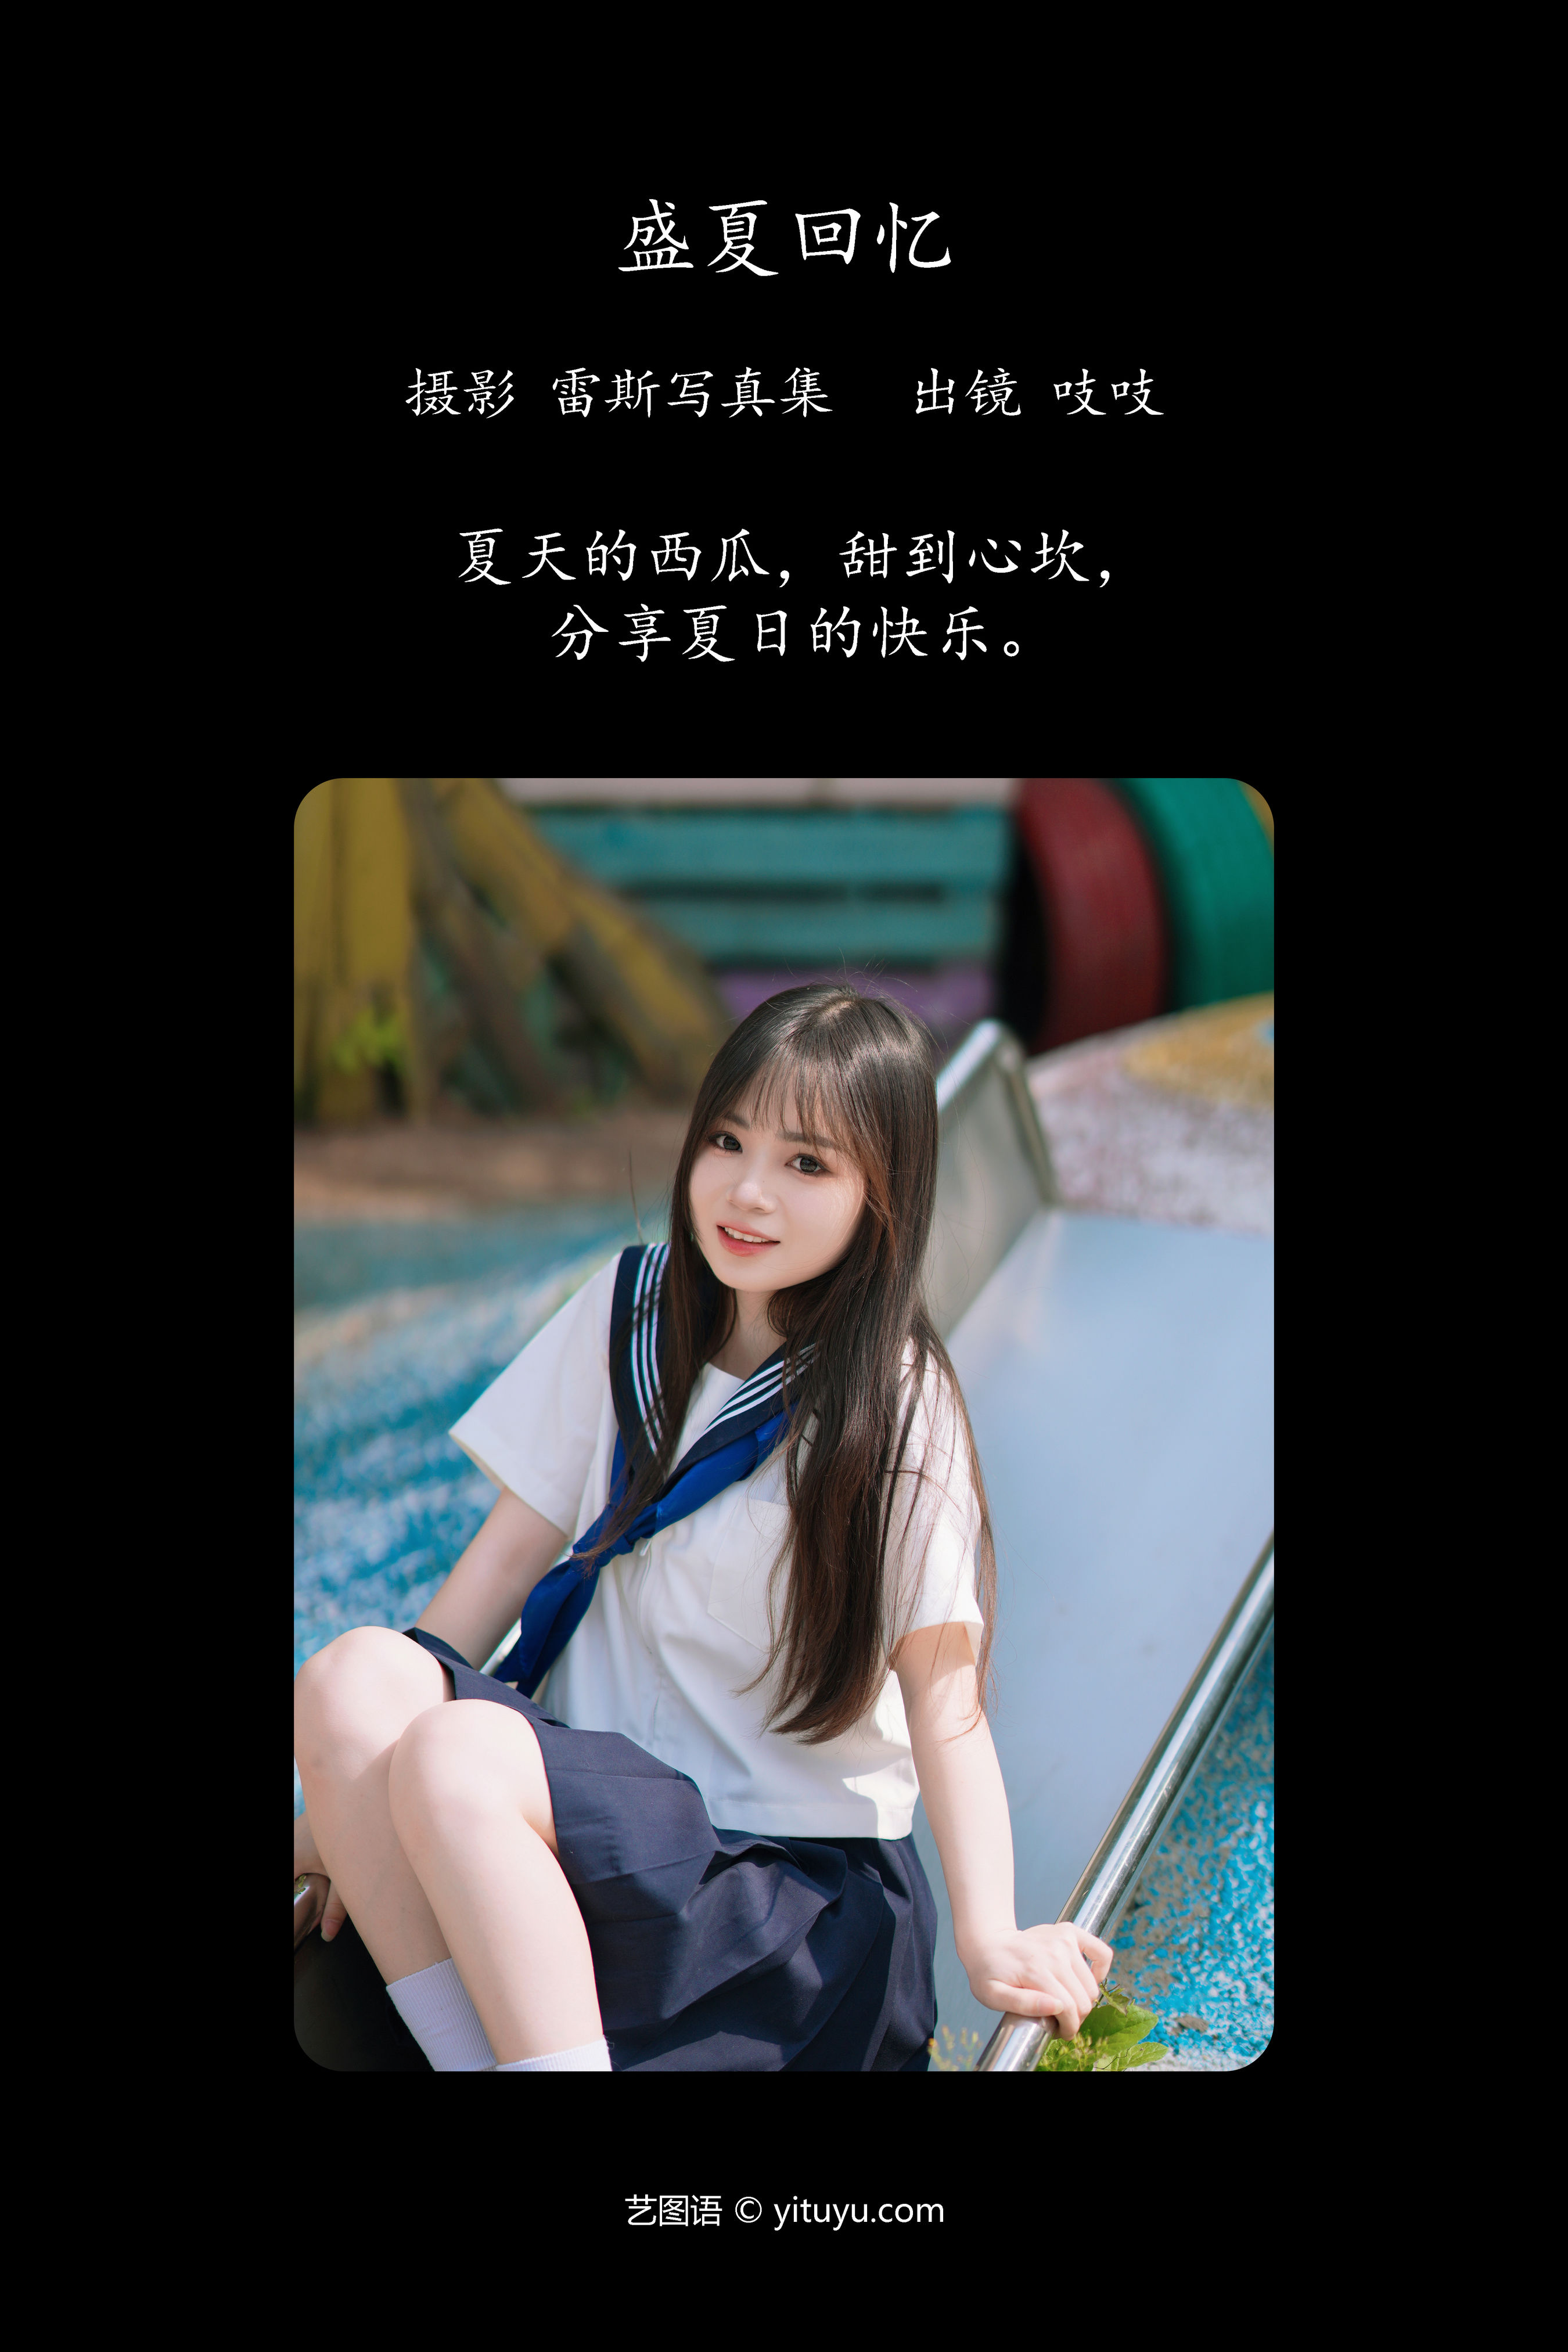 盛夏回忆 JK 日系 写真集 清纯 美少女 水手服 黑长直 可爱 夏天 二次元 甜美